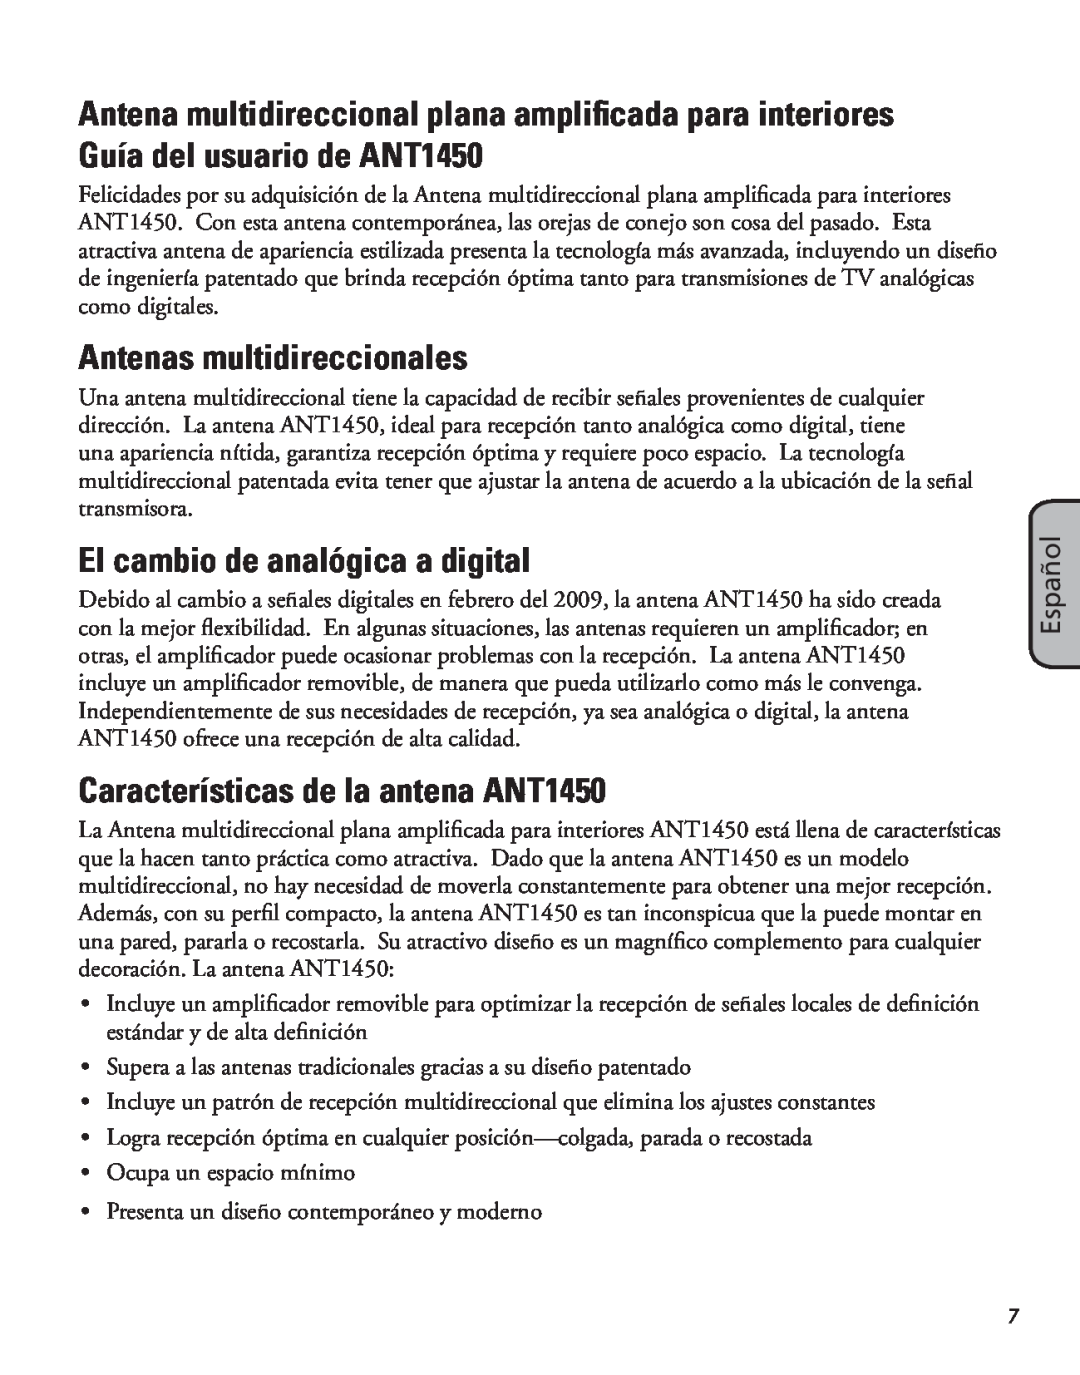 RCA manual Antenas multidireccionales, El cambio de analógica a digital, Características de la antena ANT1450, Español 